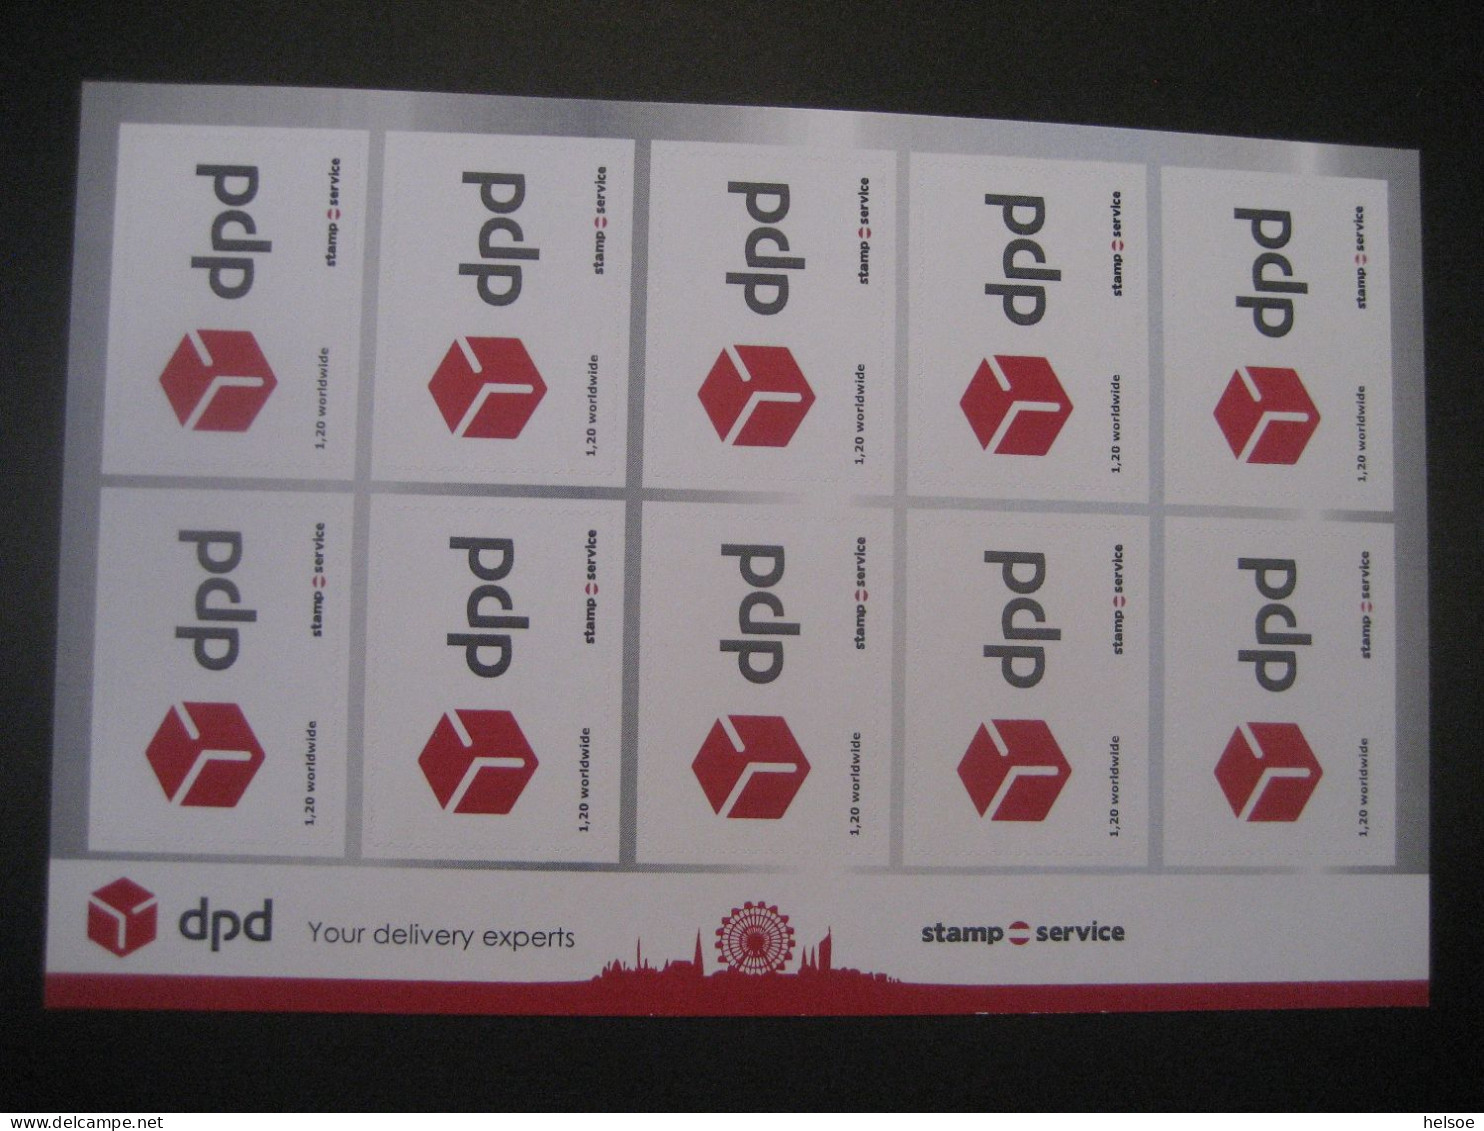 Österreich- Worldwide Stampservice, Dpd, Your Delivery Experts Ungebraucht Und Selbstklebend - Varietà & Curiosità